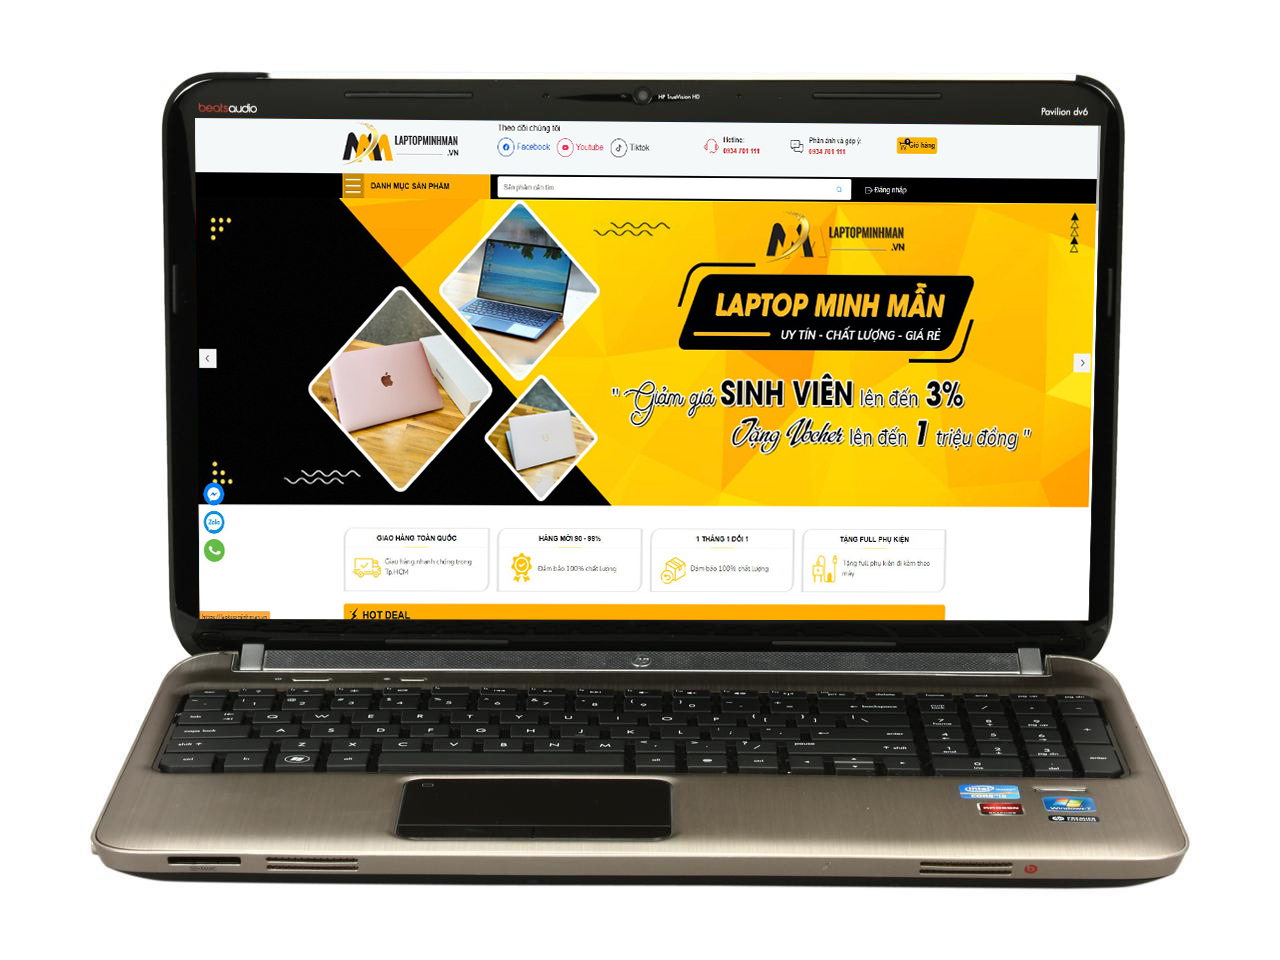 Laptop HP Pavilion DV6 i5 2450M/ Ram 6GB/ SSD128/Vga HD/ Vàng Gold/ Giá rẻ